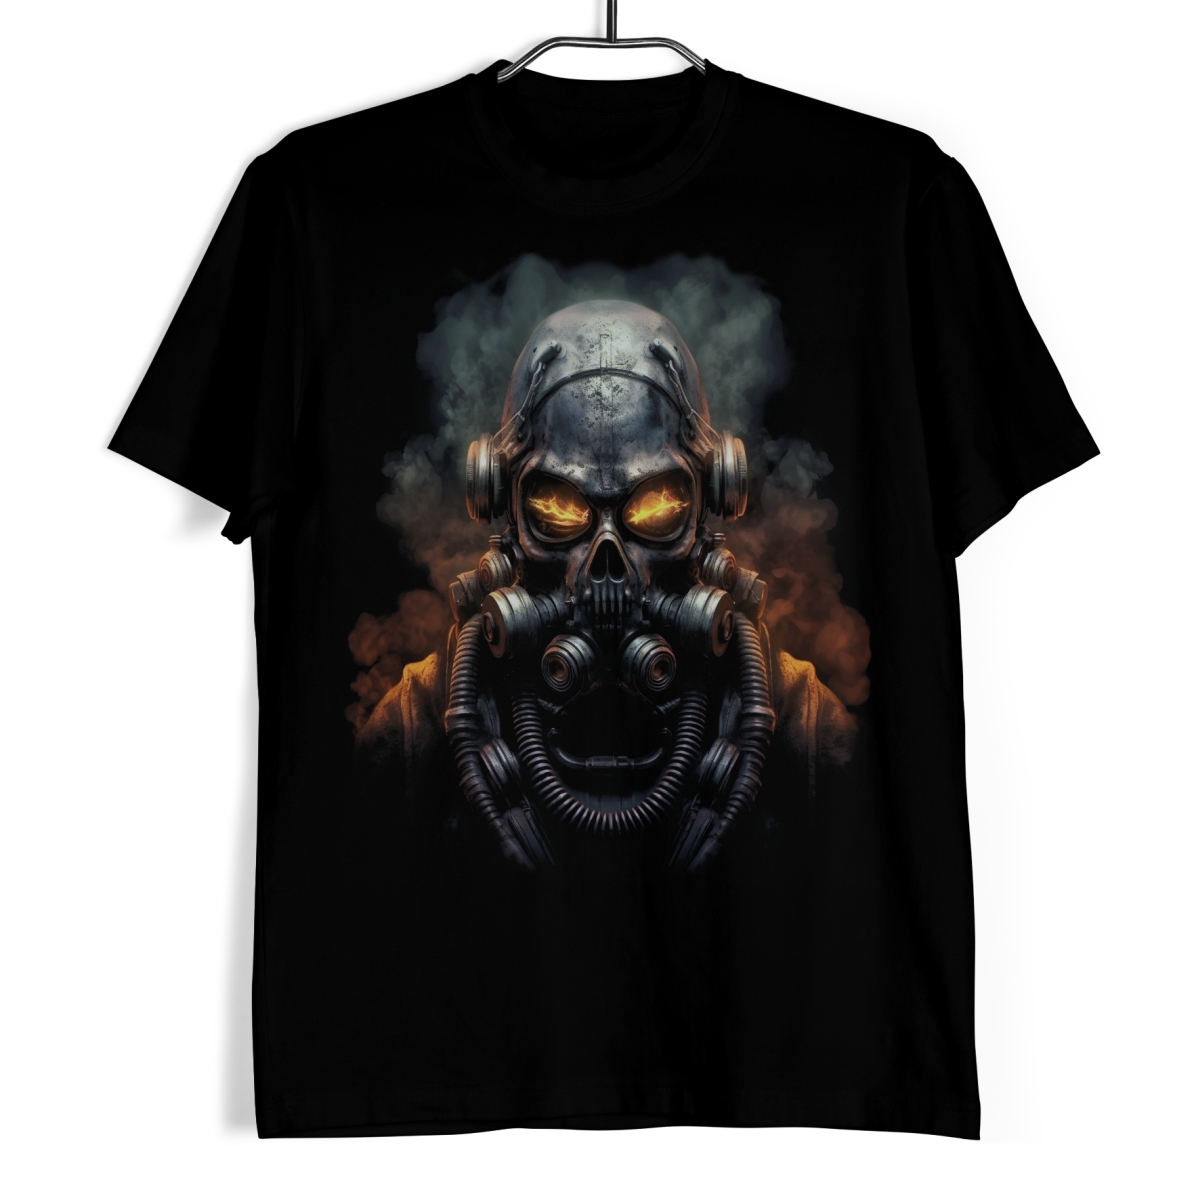 Tričko s lebkou - FuturaSkull Echo XL